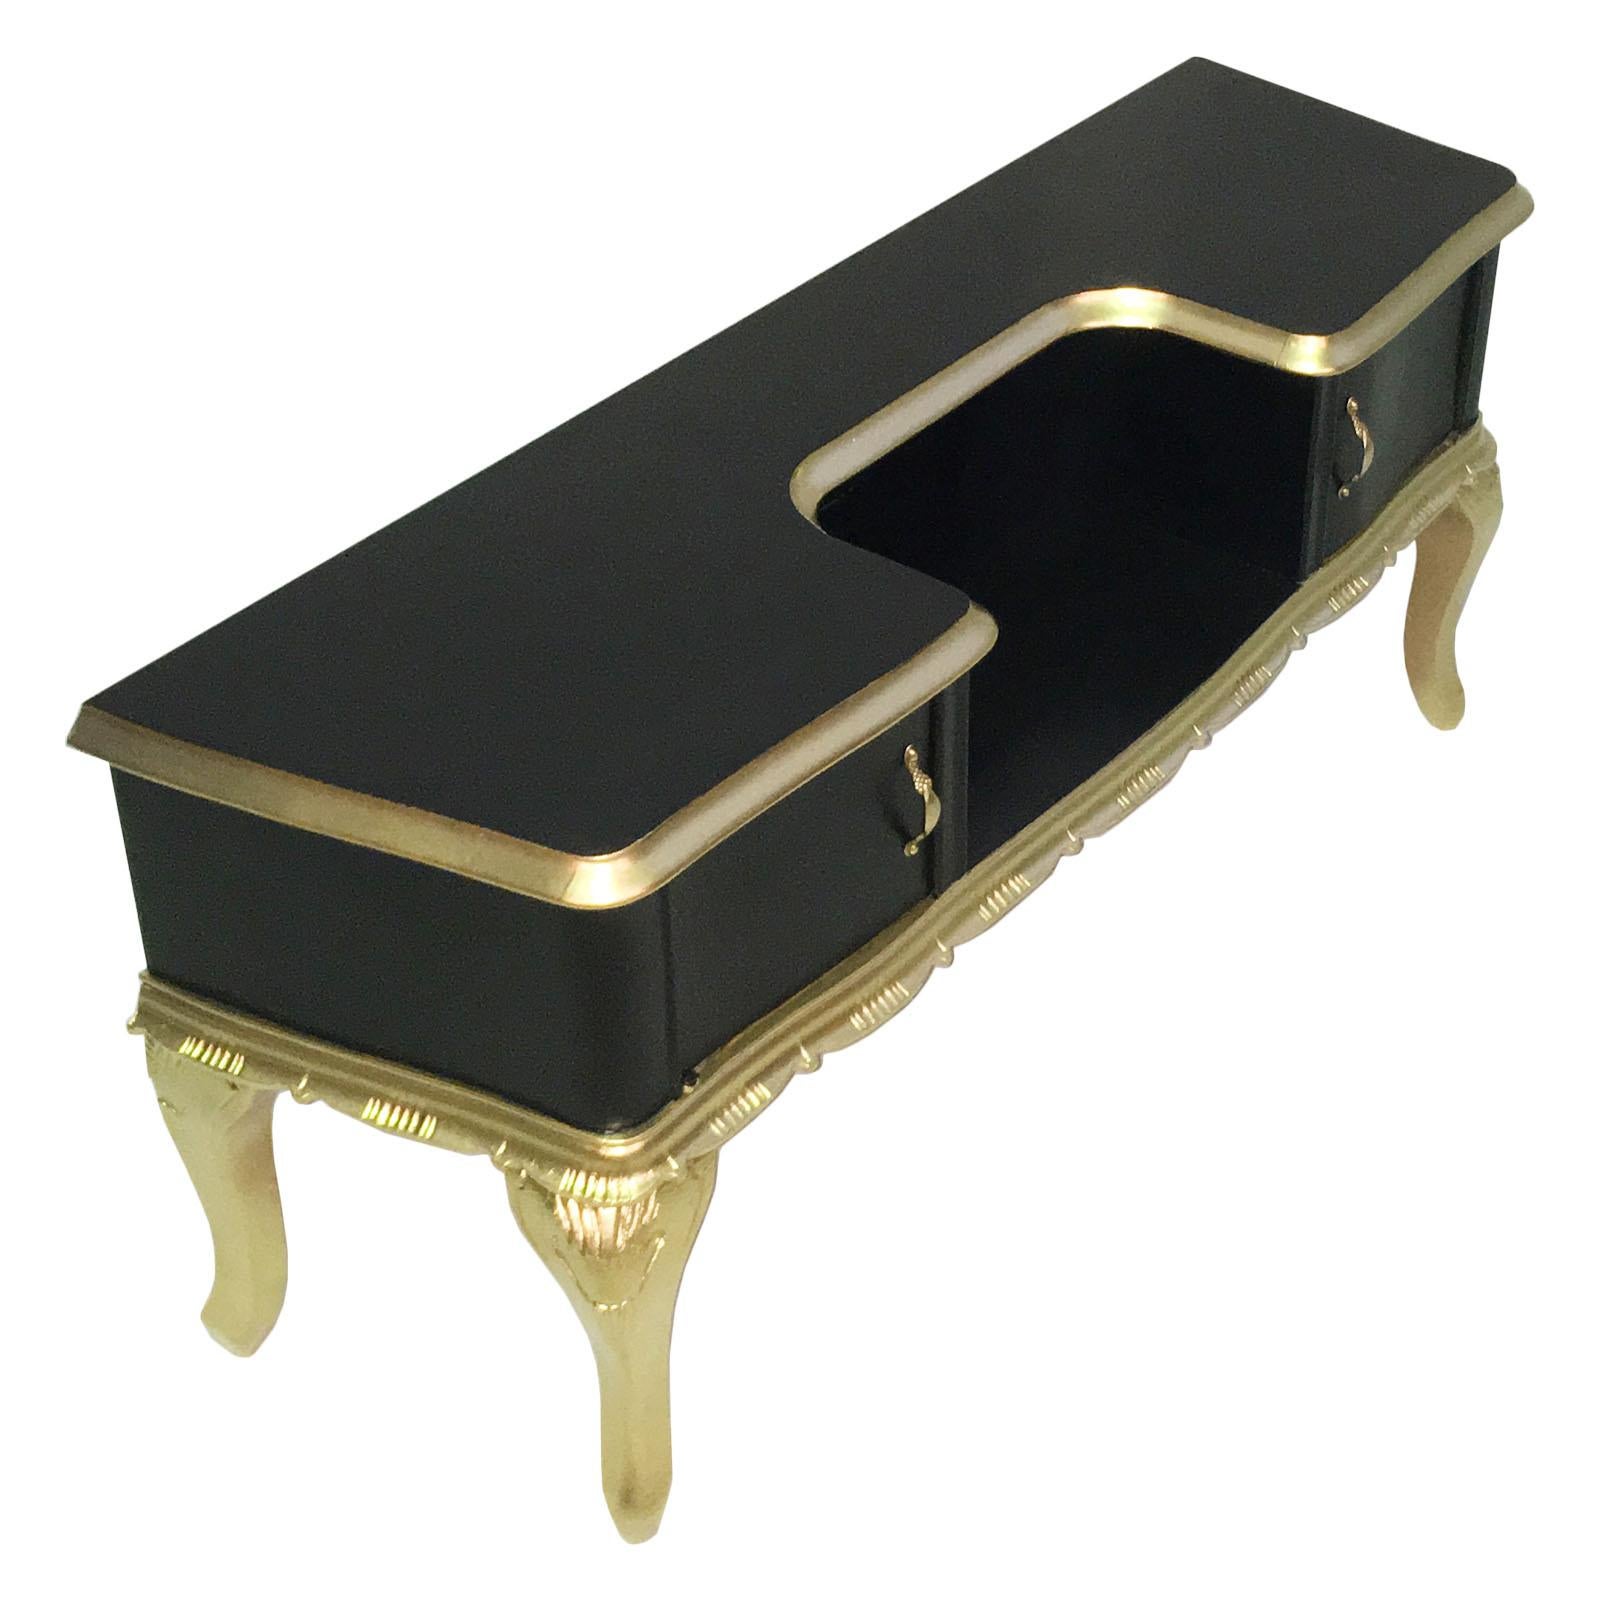 Magnifique meuble TV provenant d'une console basse baroque vénitienne des années 1920, en noyer sculpté à la main et doré, laqué noir. Poignées en bronze doré.
Mesures cm : H 52, L 116, P 34.